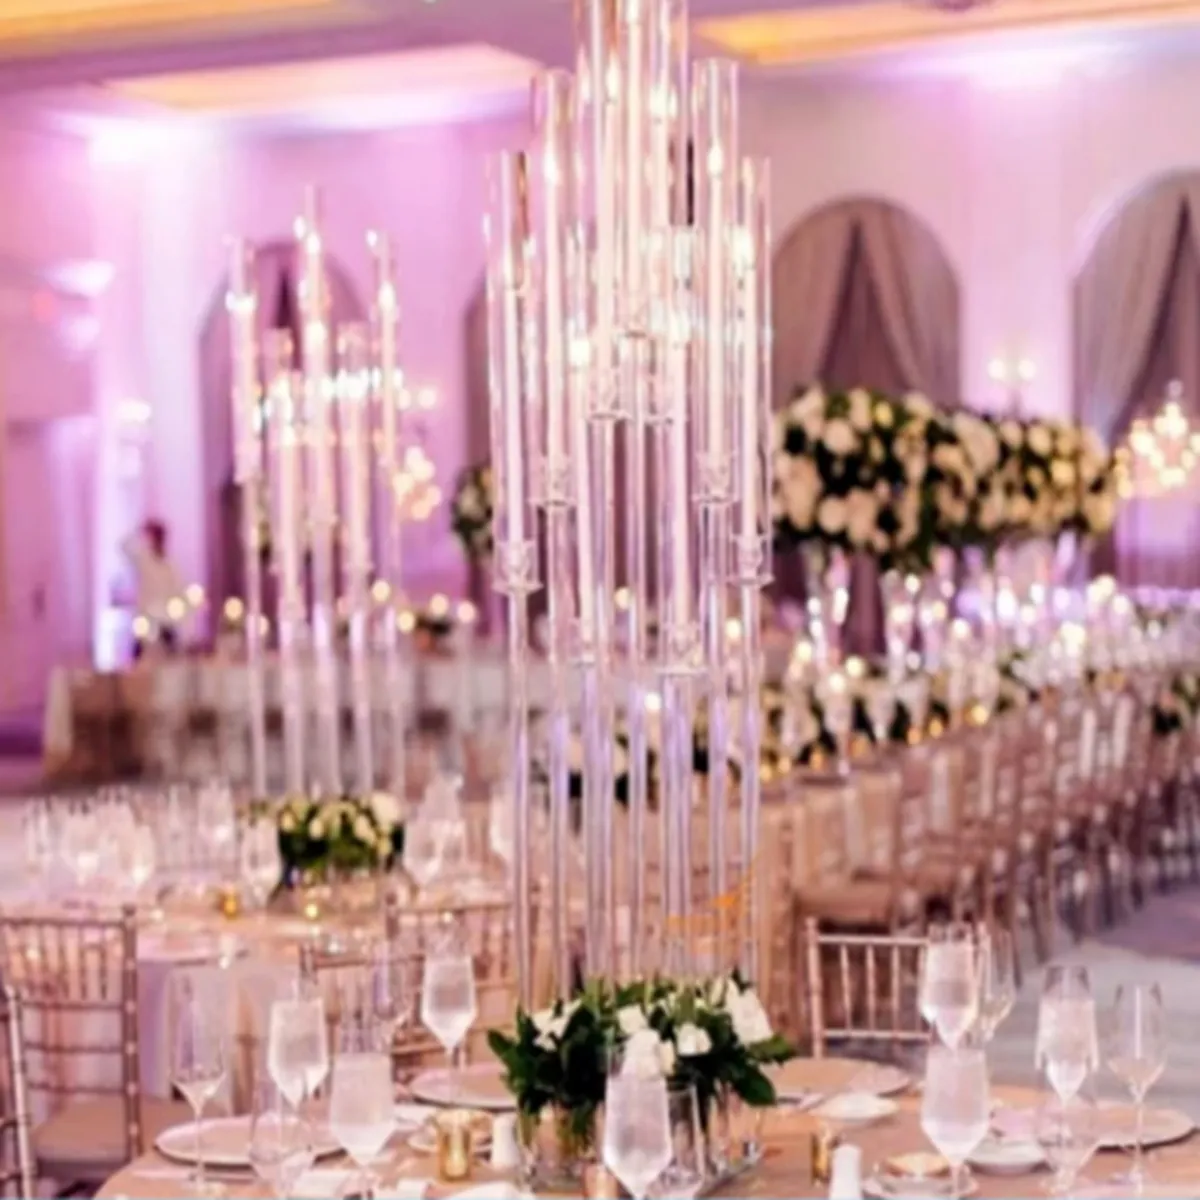 Neues Hochzeits-Mittelstück, hohe Acrylröhren, Kerzenhalter, Kristall-Hurricane-Kerzenleuchter für Tischständer mit Lampenschirm senyu562